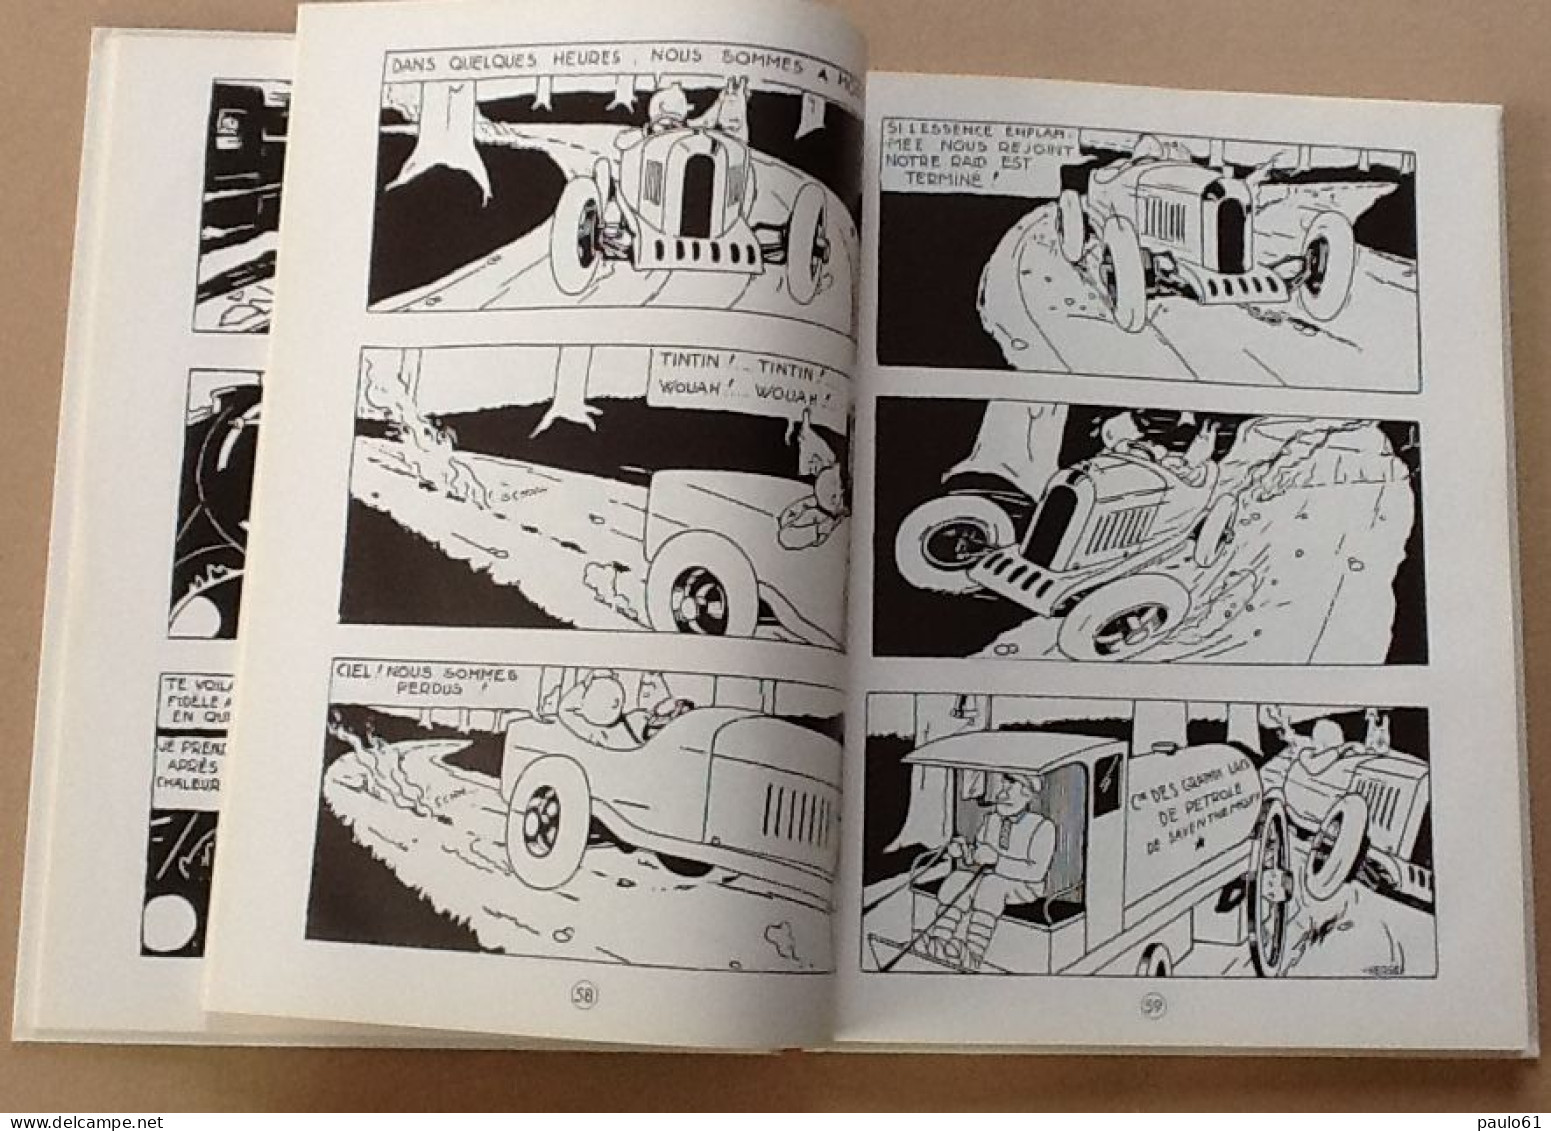 Les Aventures De Tintin AU PAYS DES SOVIETS  1999 - Hergé